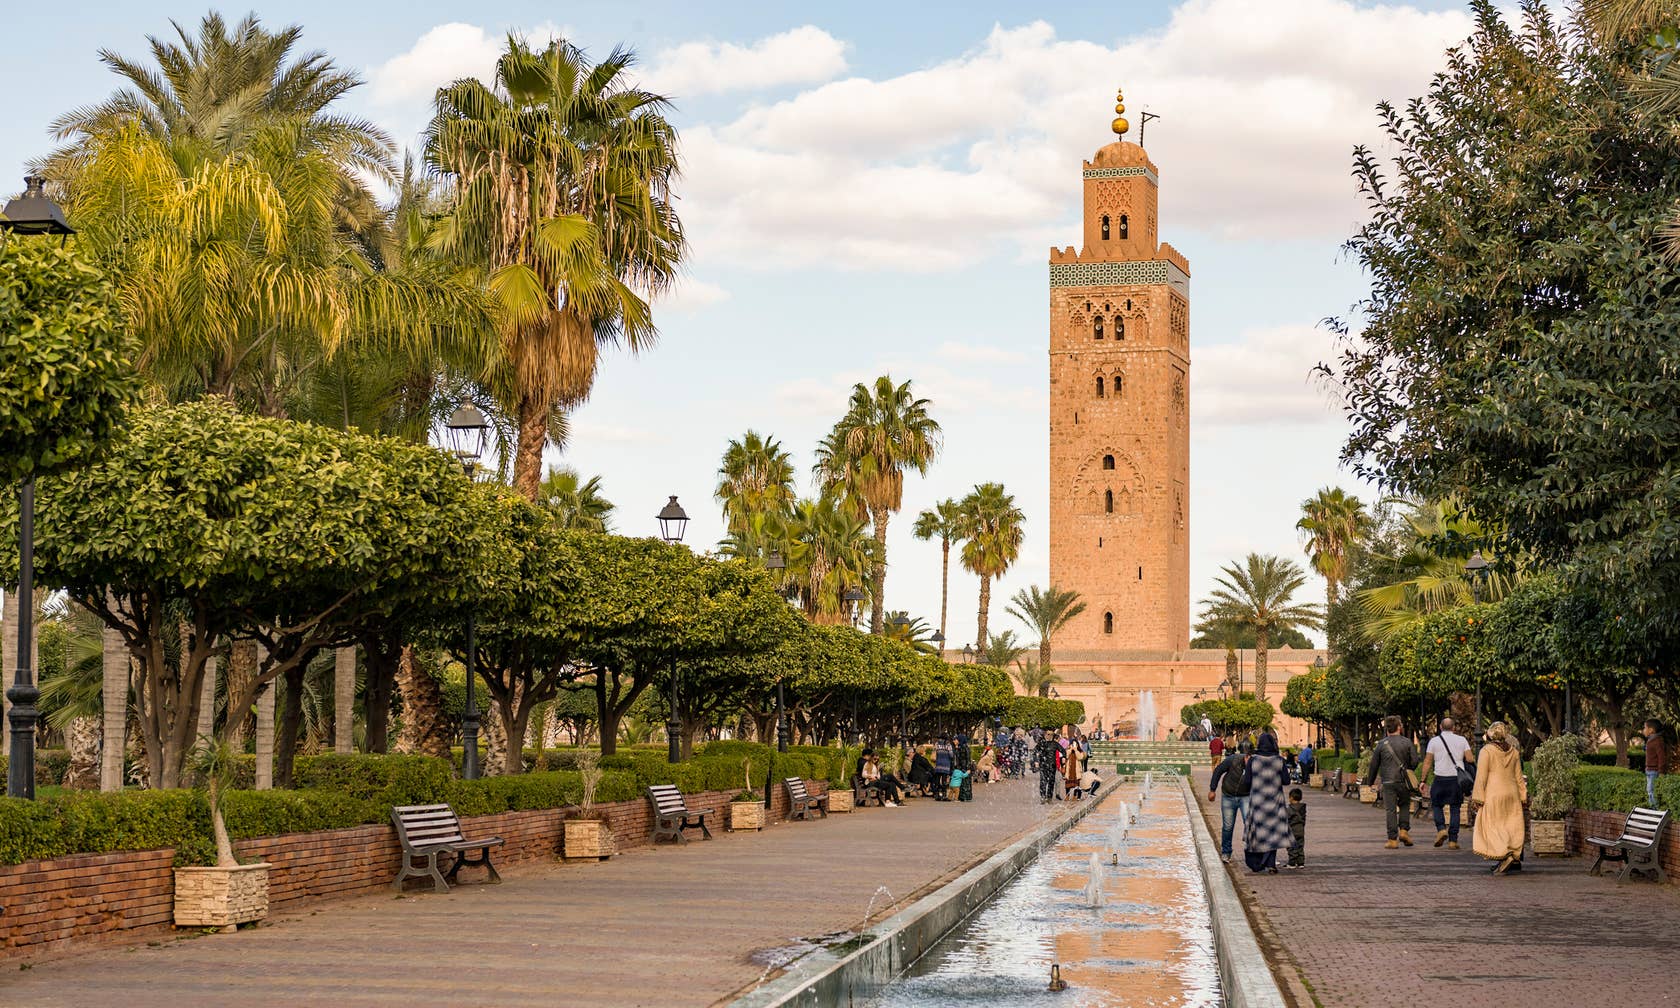 Aluguéis por temporada em Marrocos